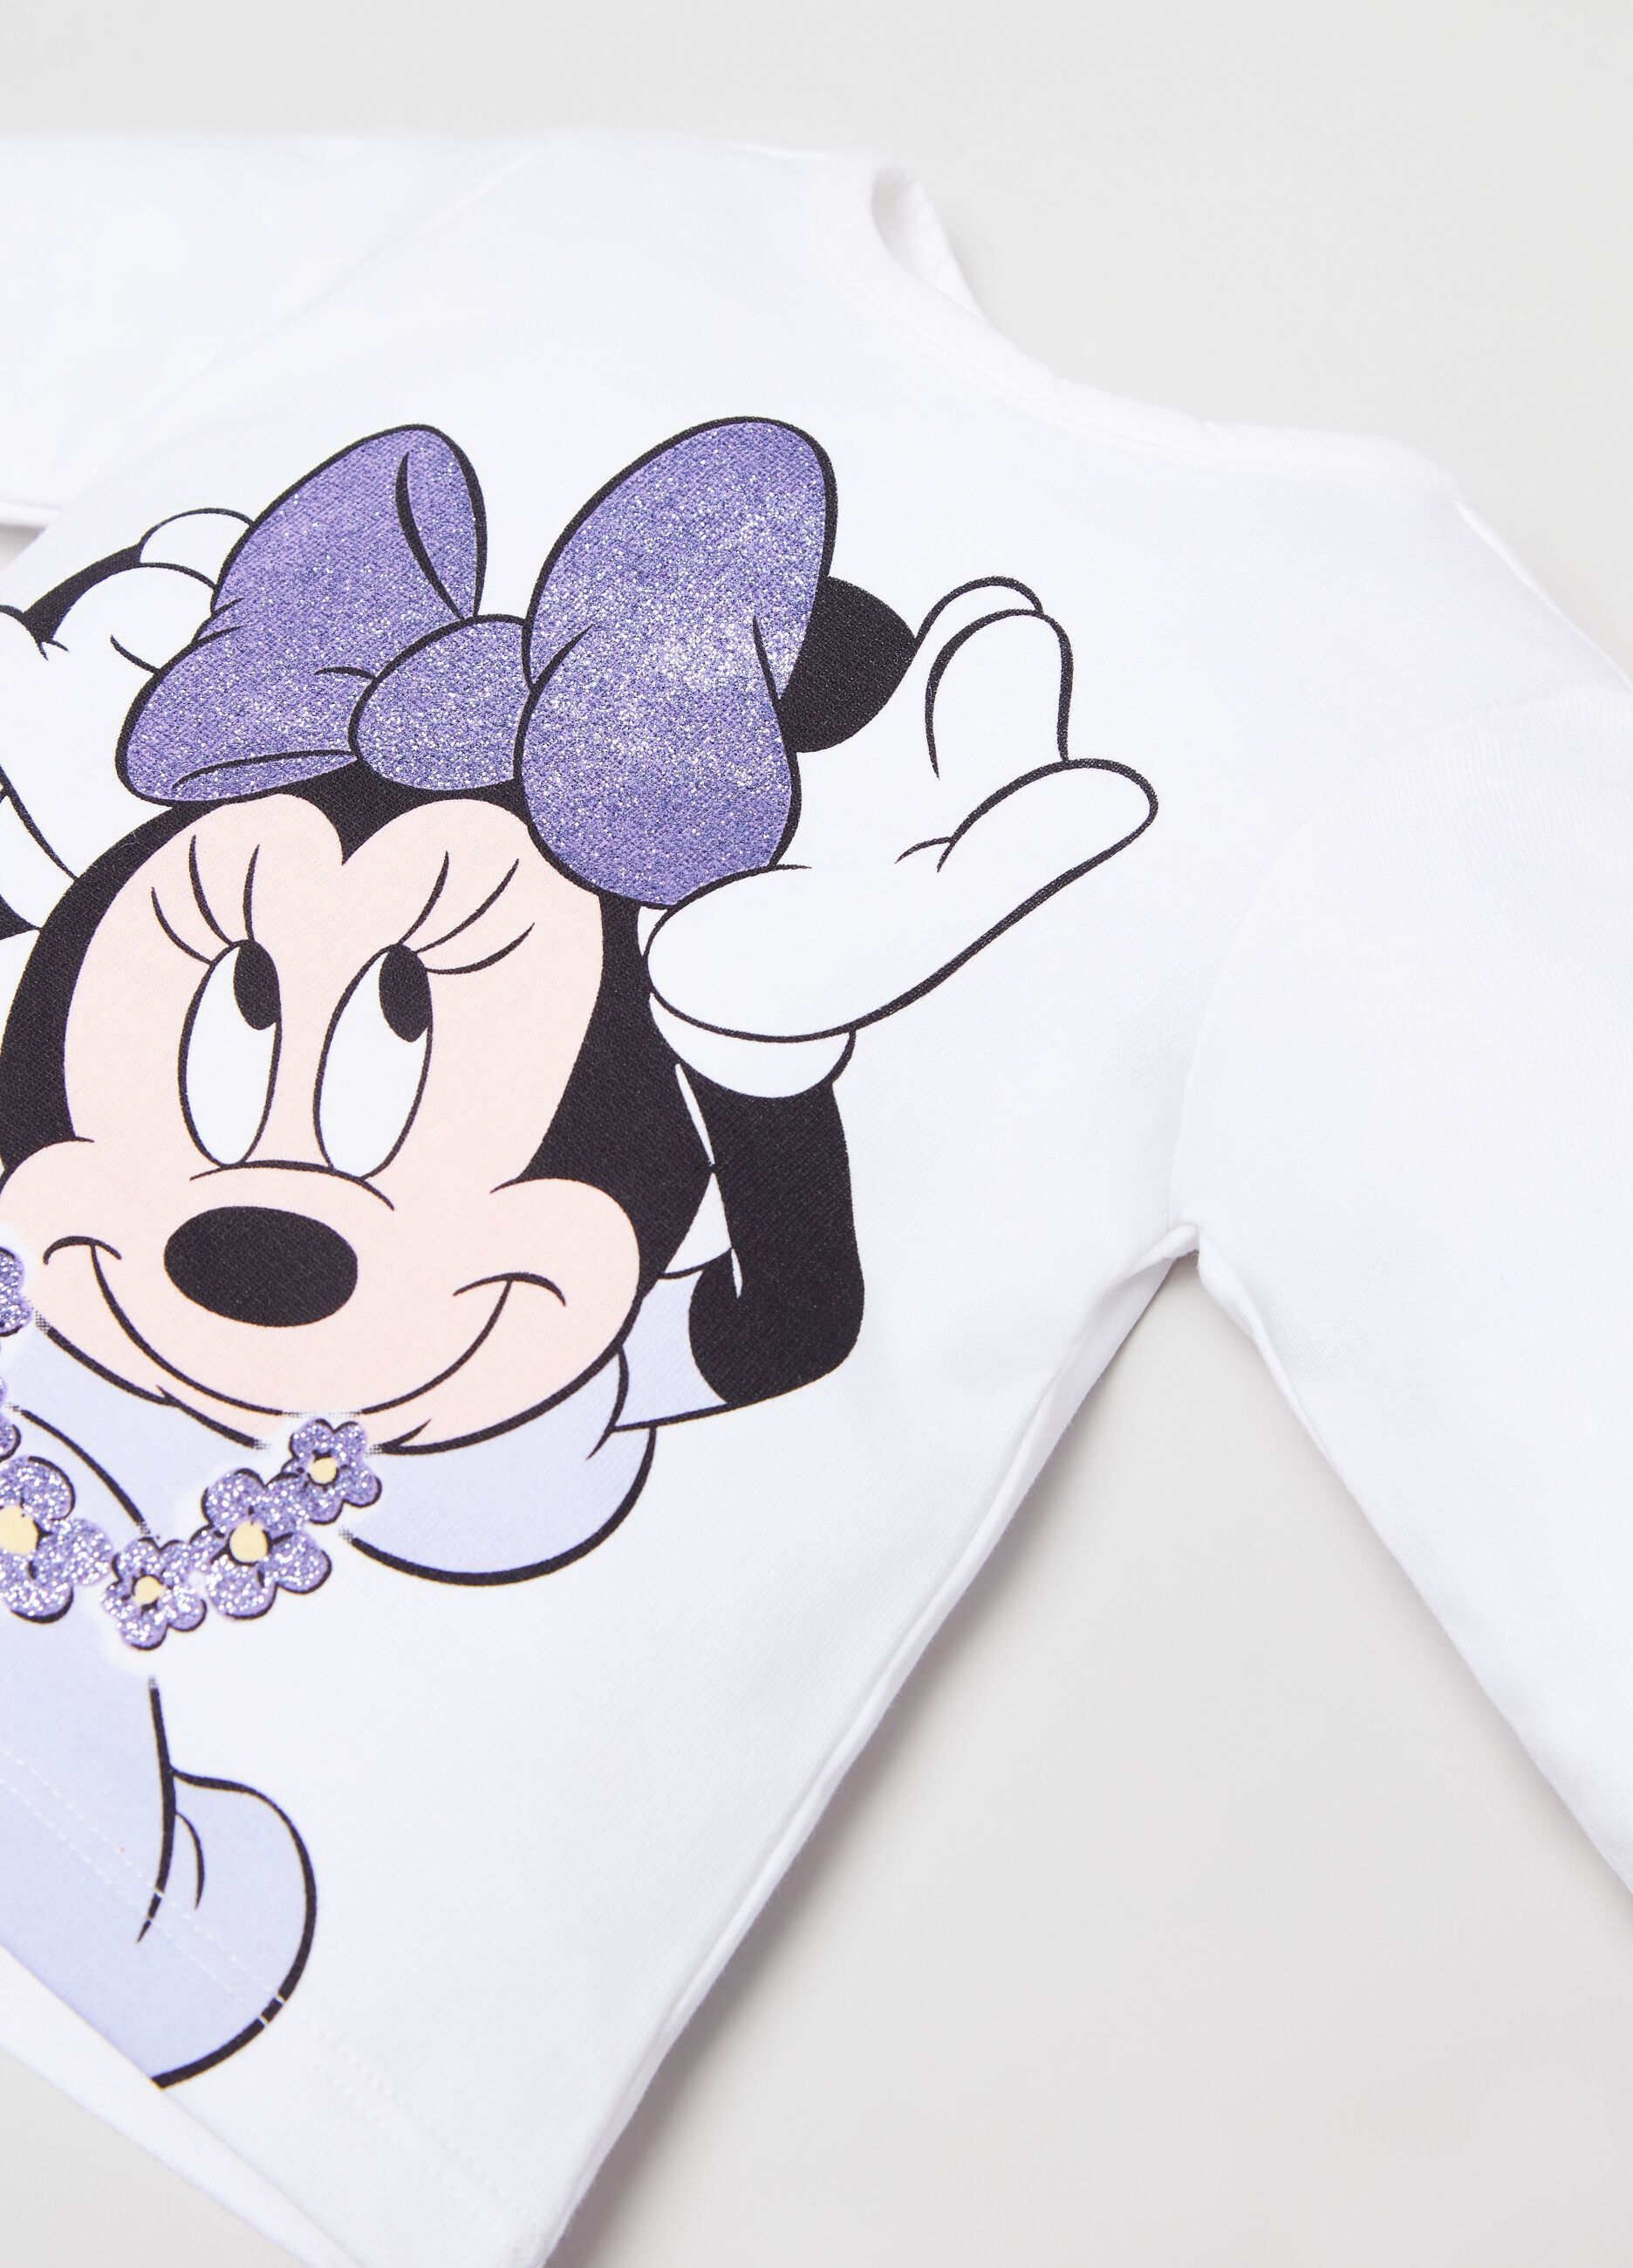 Conjunto camiseta y leggings Disney Baby Minnie